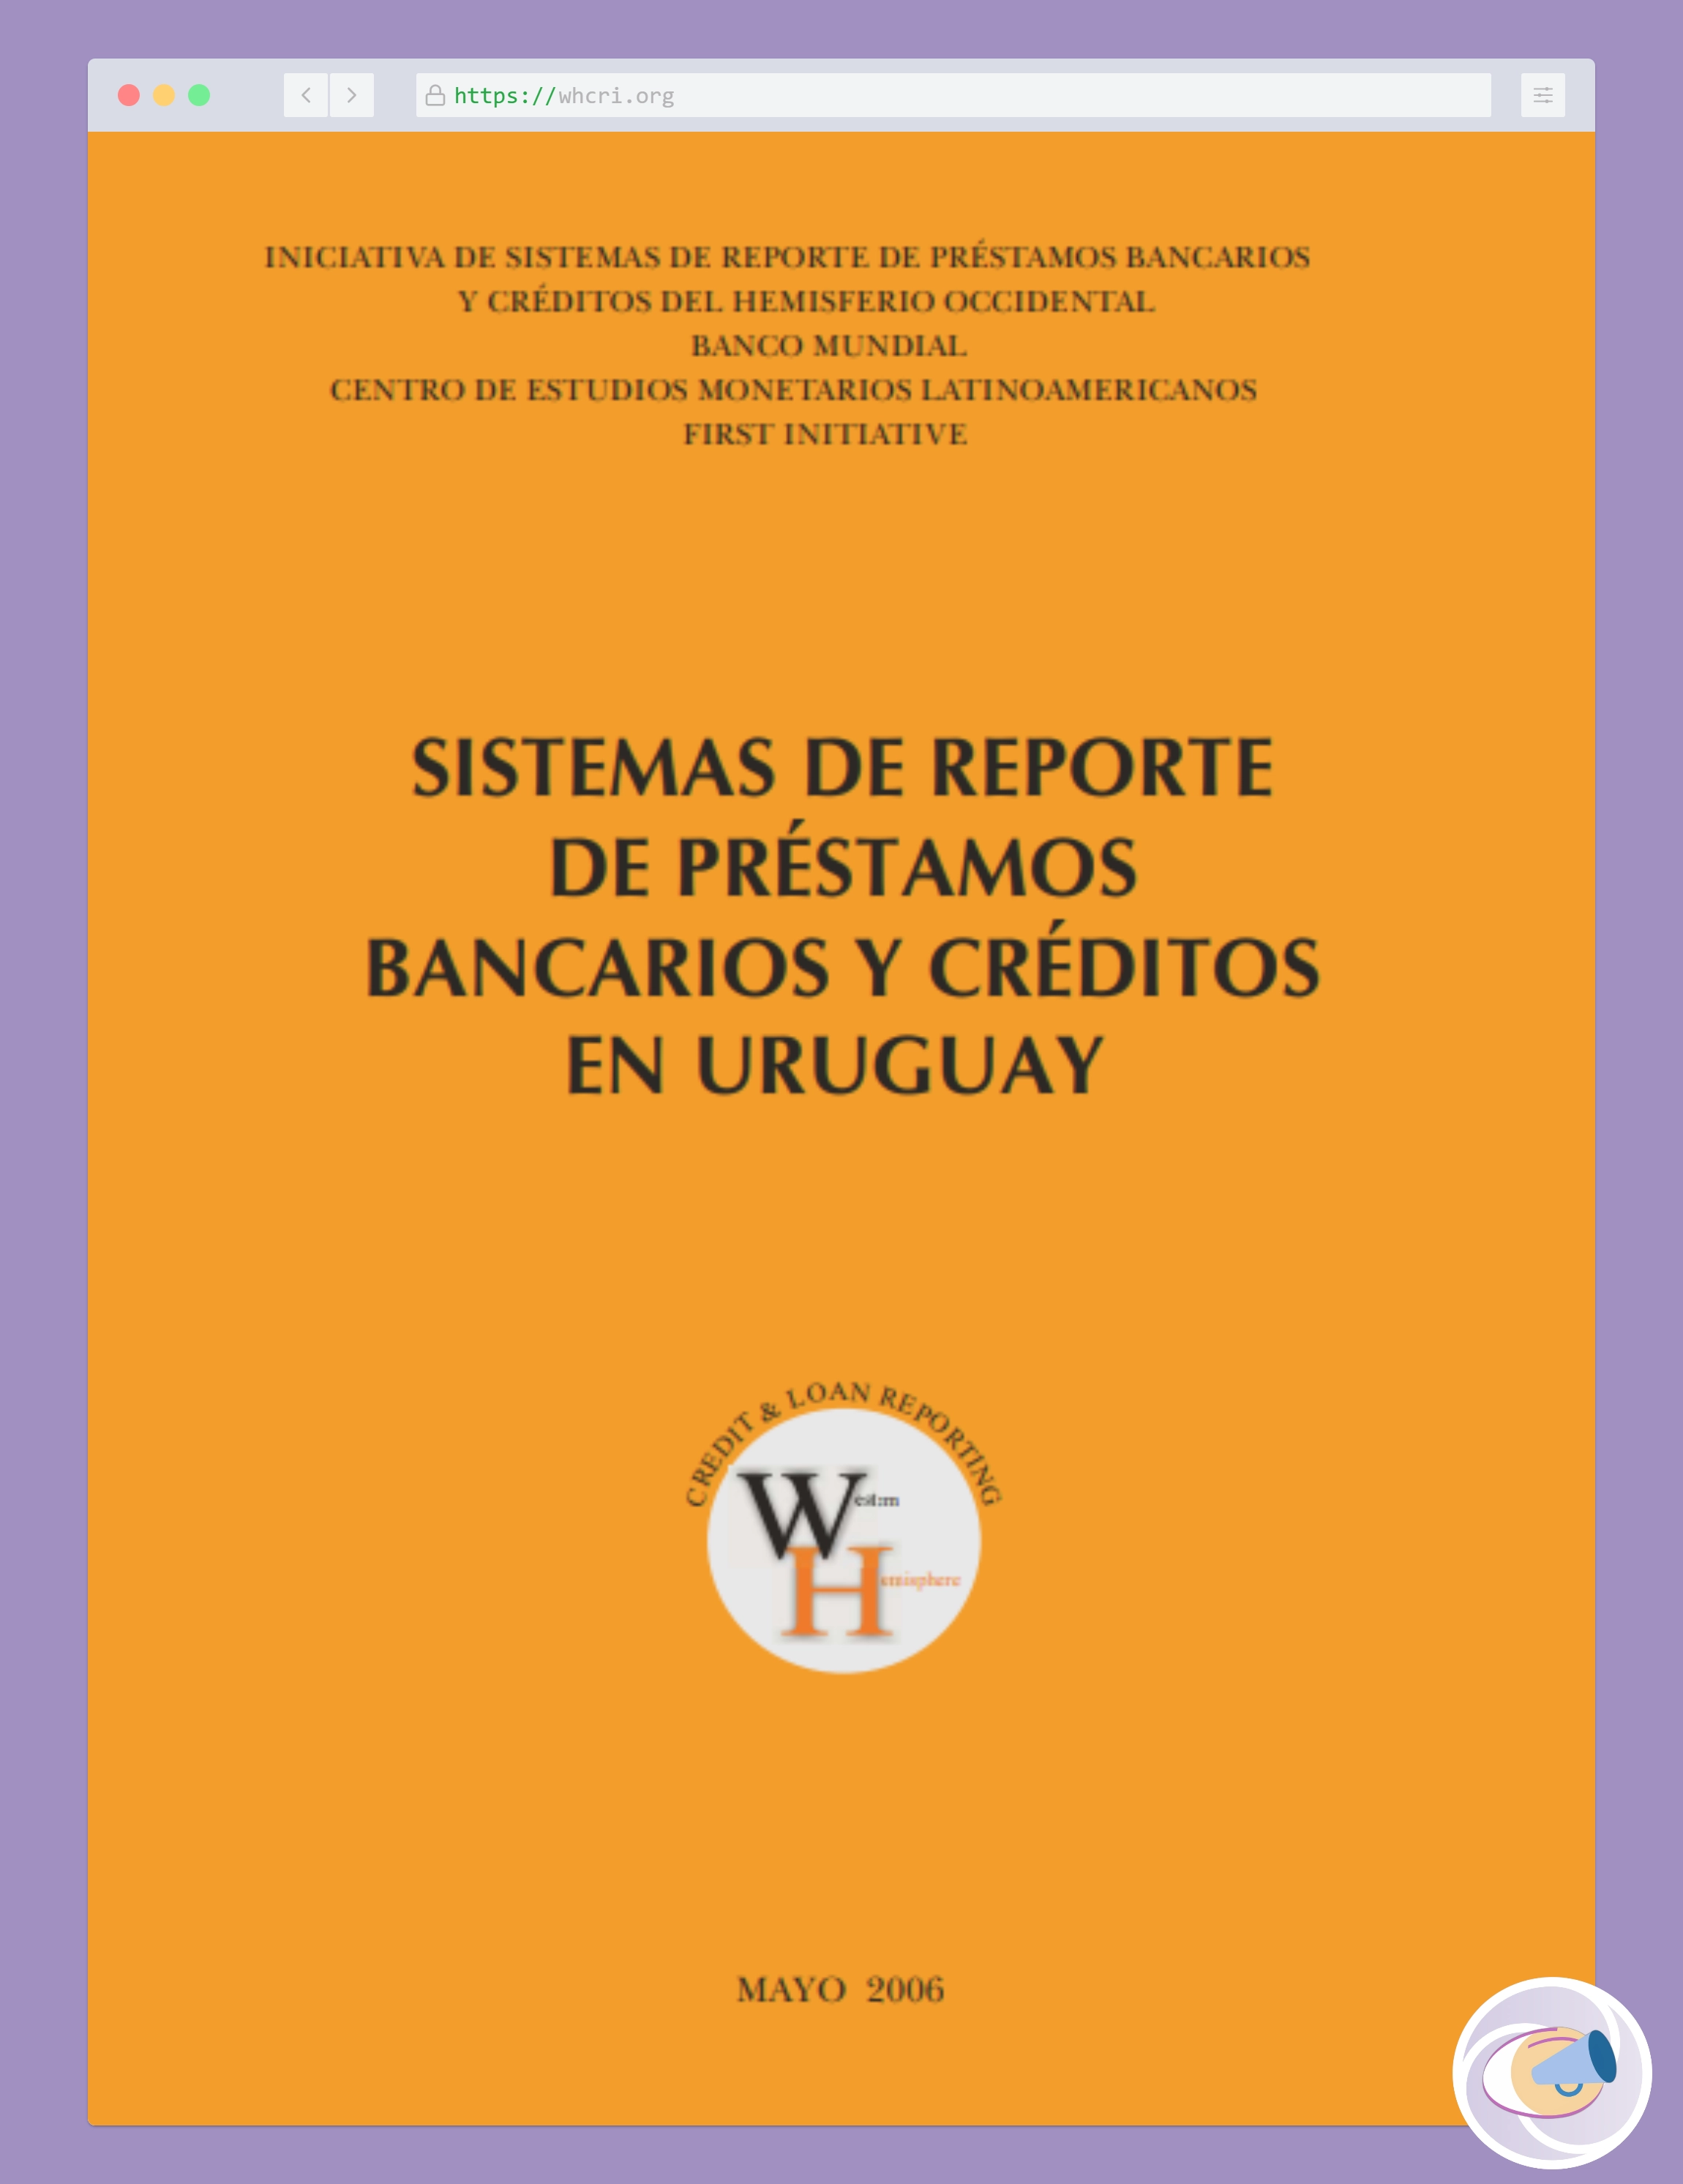 Reporte Centro de Estudios Monetarios Latinoamericanos, Banco Mundial y FIRST.